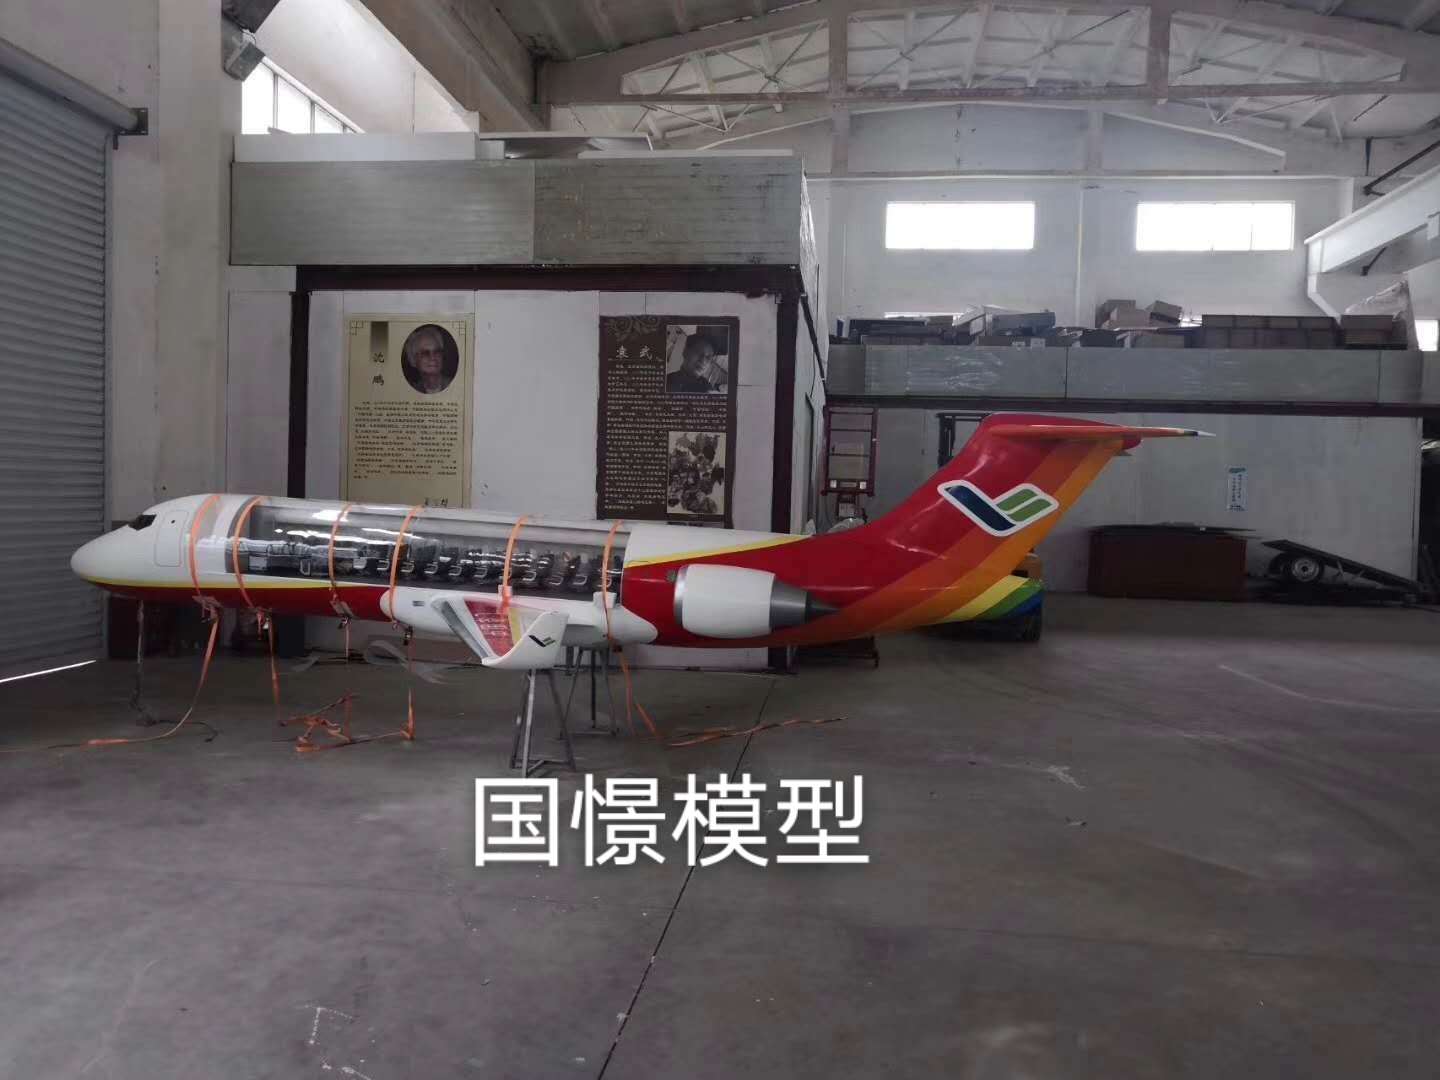 台州飞机模型